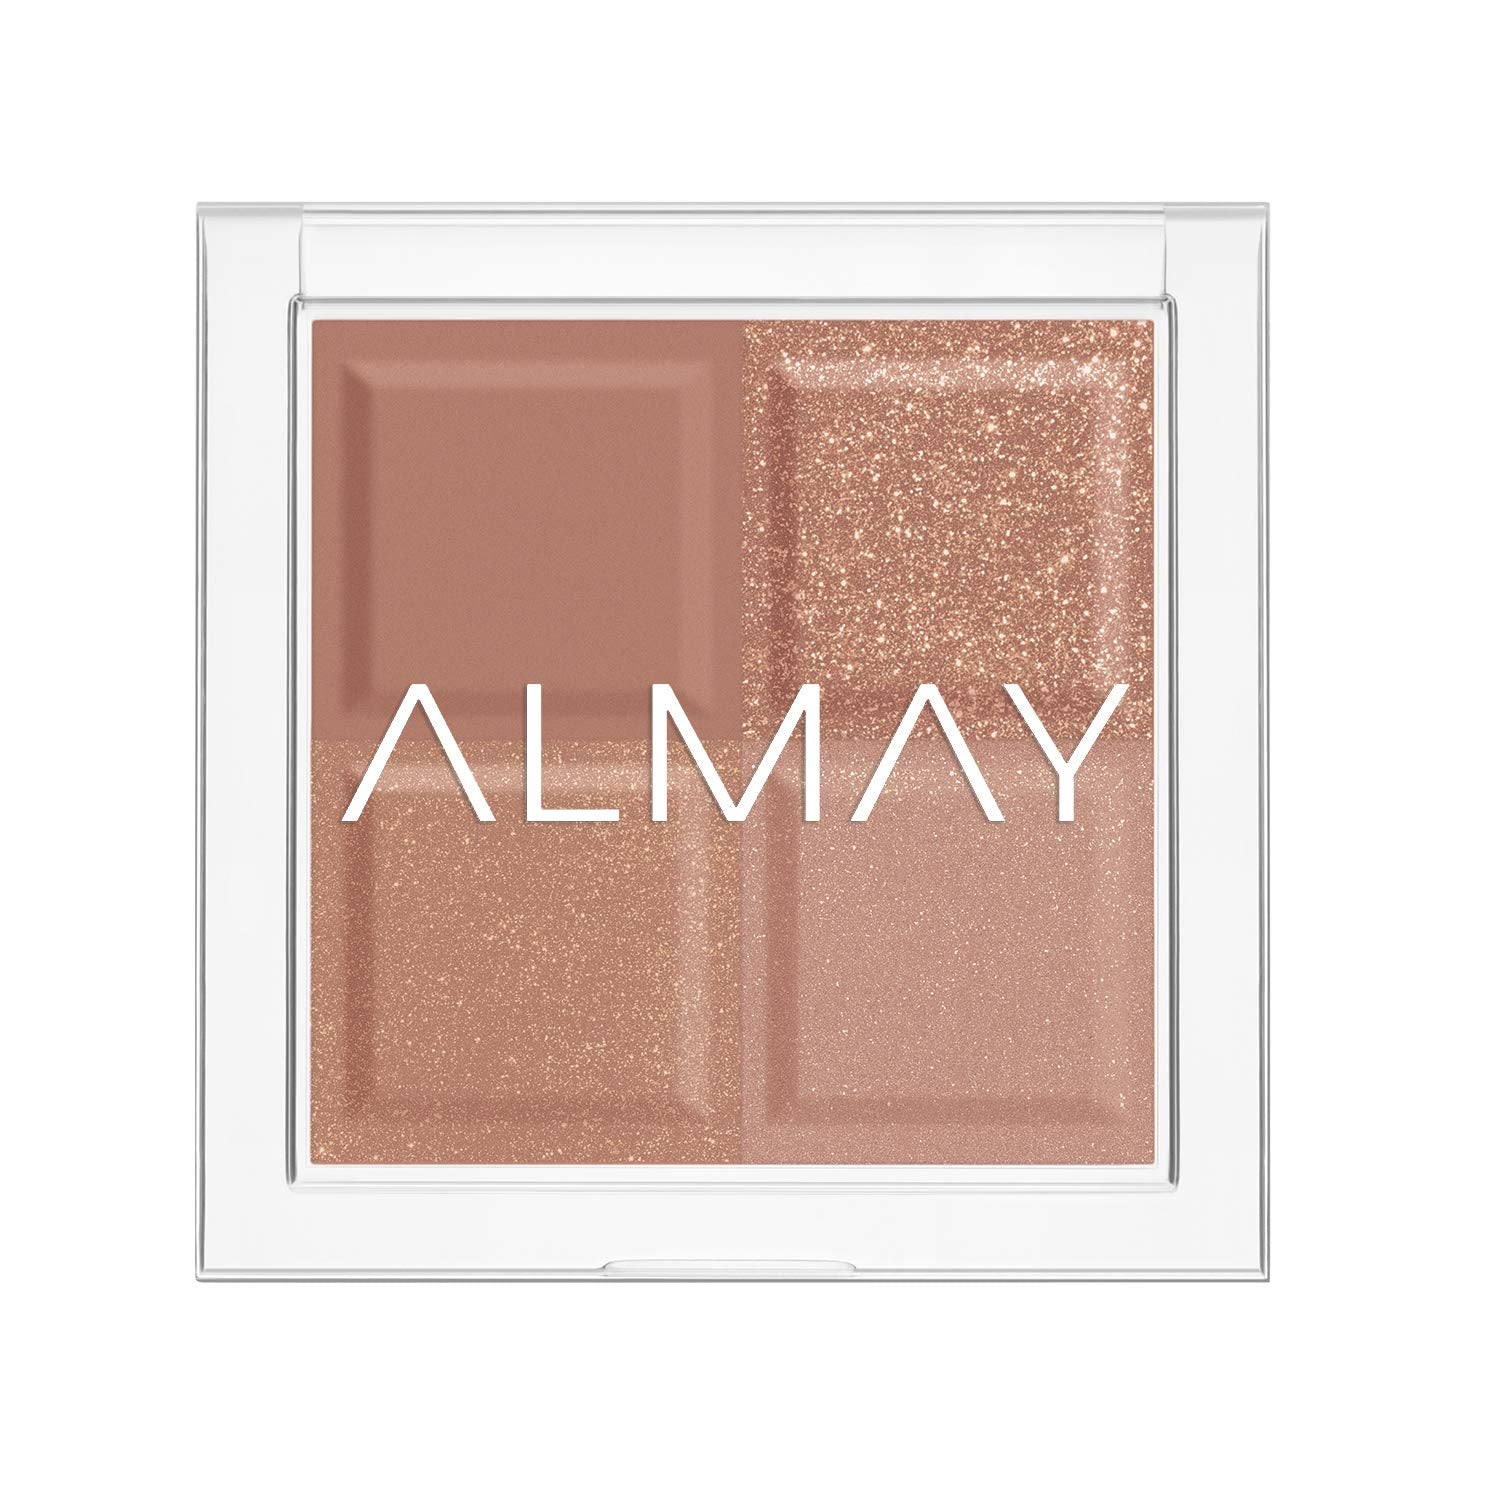 ALMAY Shadow Quad - Pressed Powder Eyeshadow